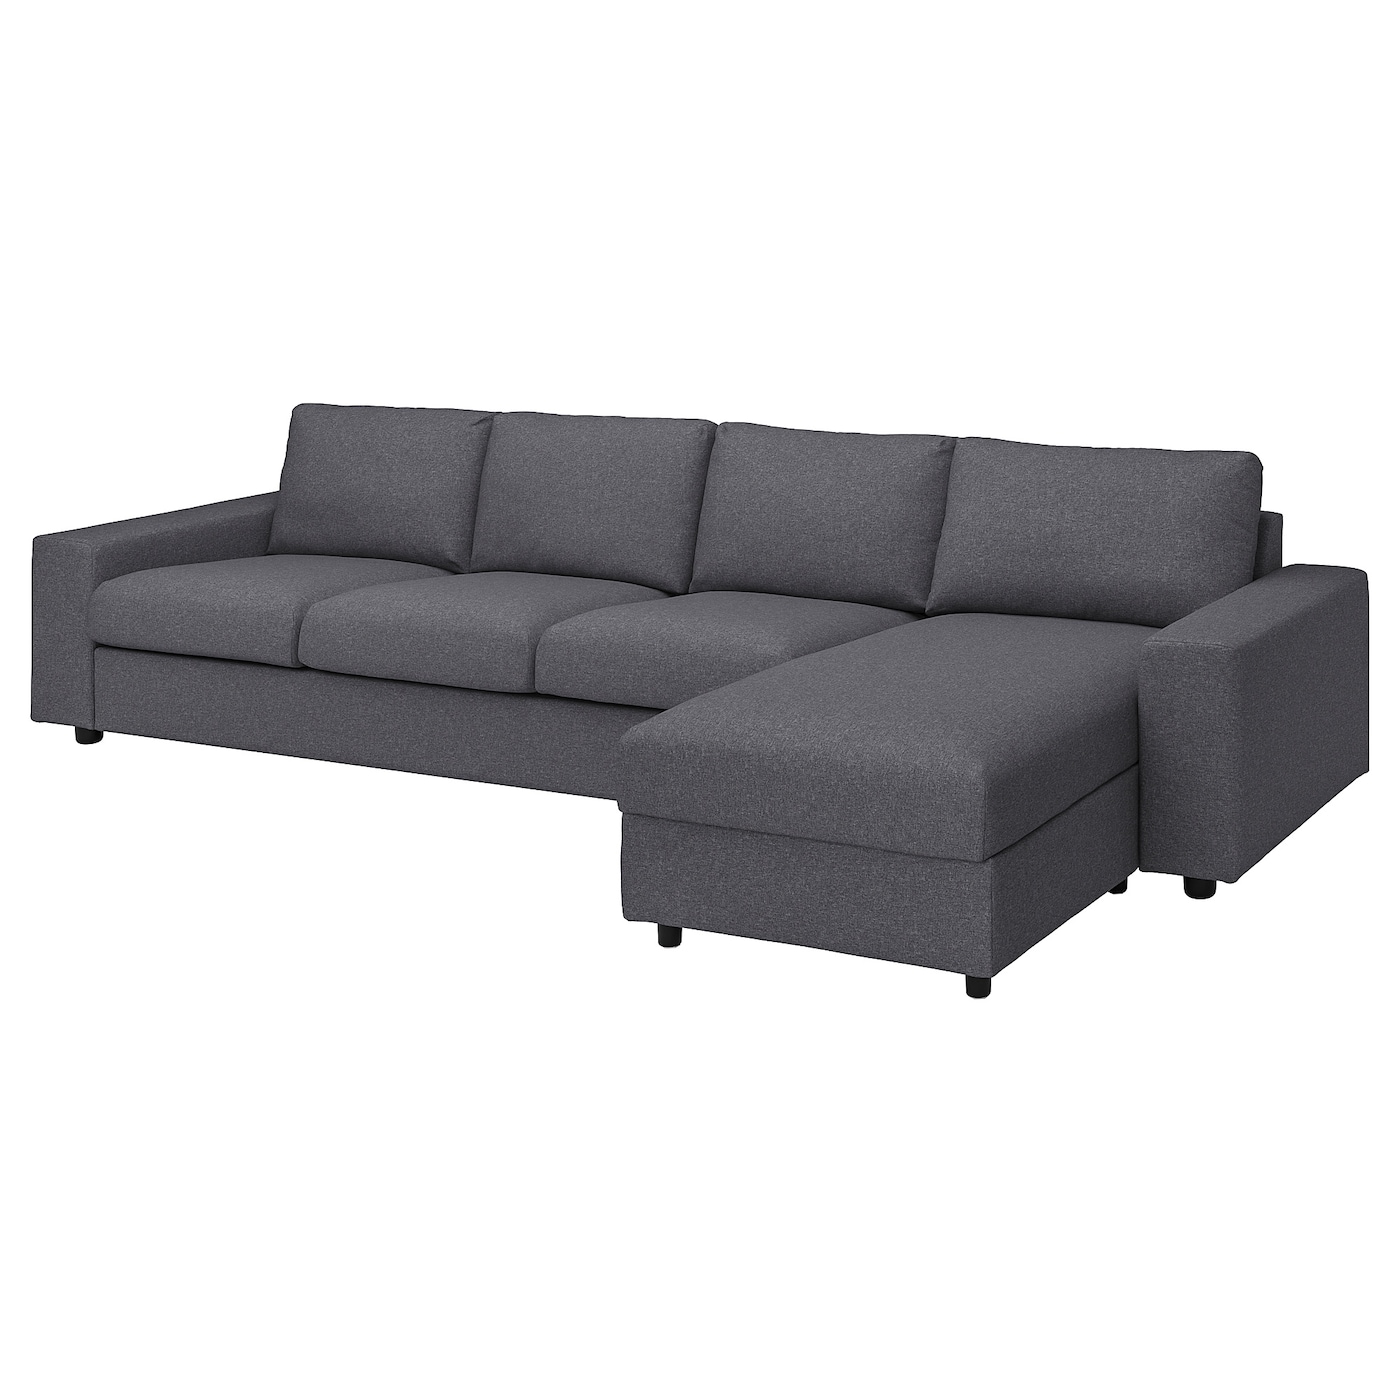 ВИМЛЕ 4-местный диван + диван, с широкими подлокотниками/Гуннаред средний серый VIMLE IKEA